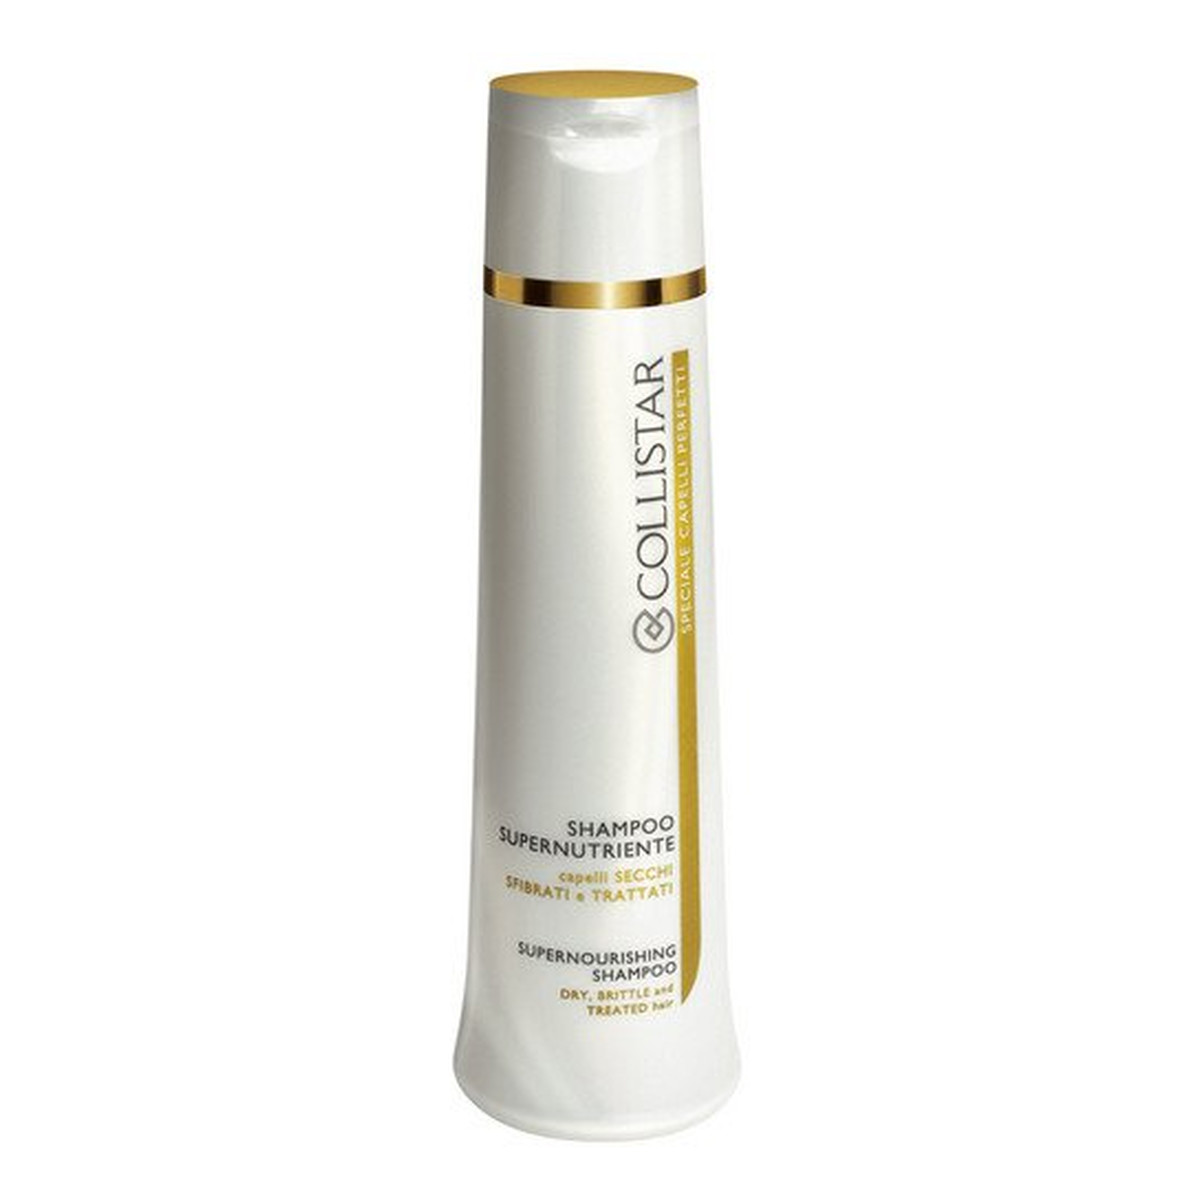 Collistar Supernourishing Shampoo szampon super-odżywczy do włosów suchych i zniszczonych 250ml